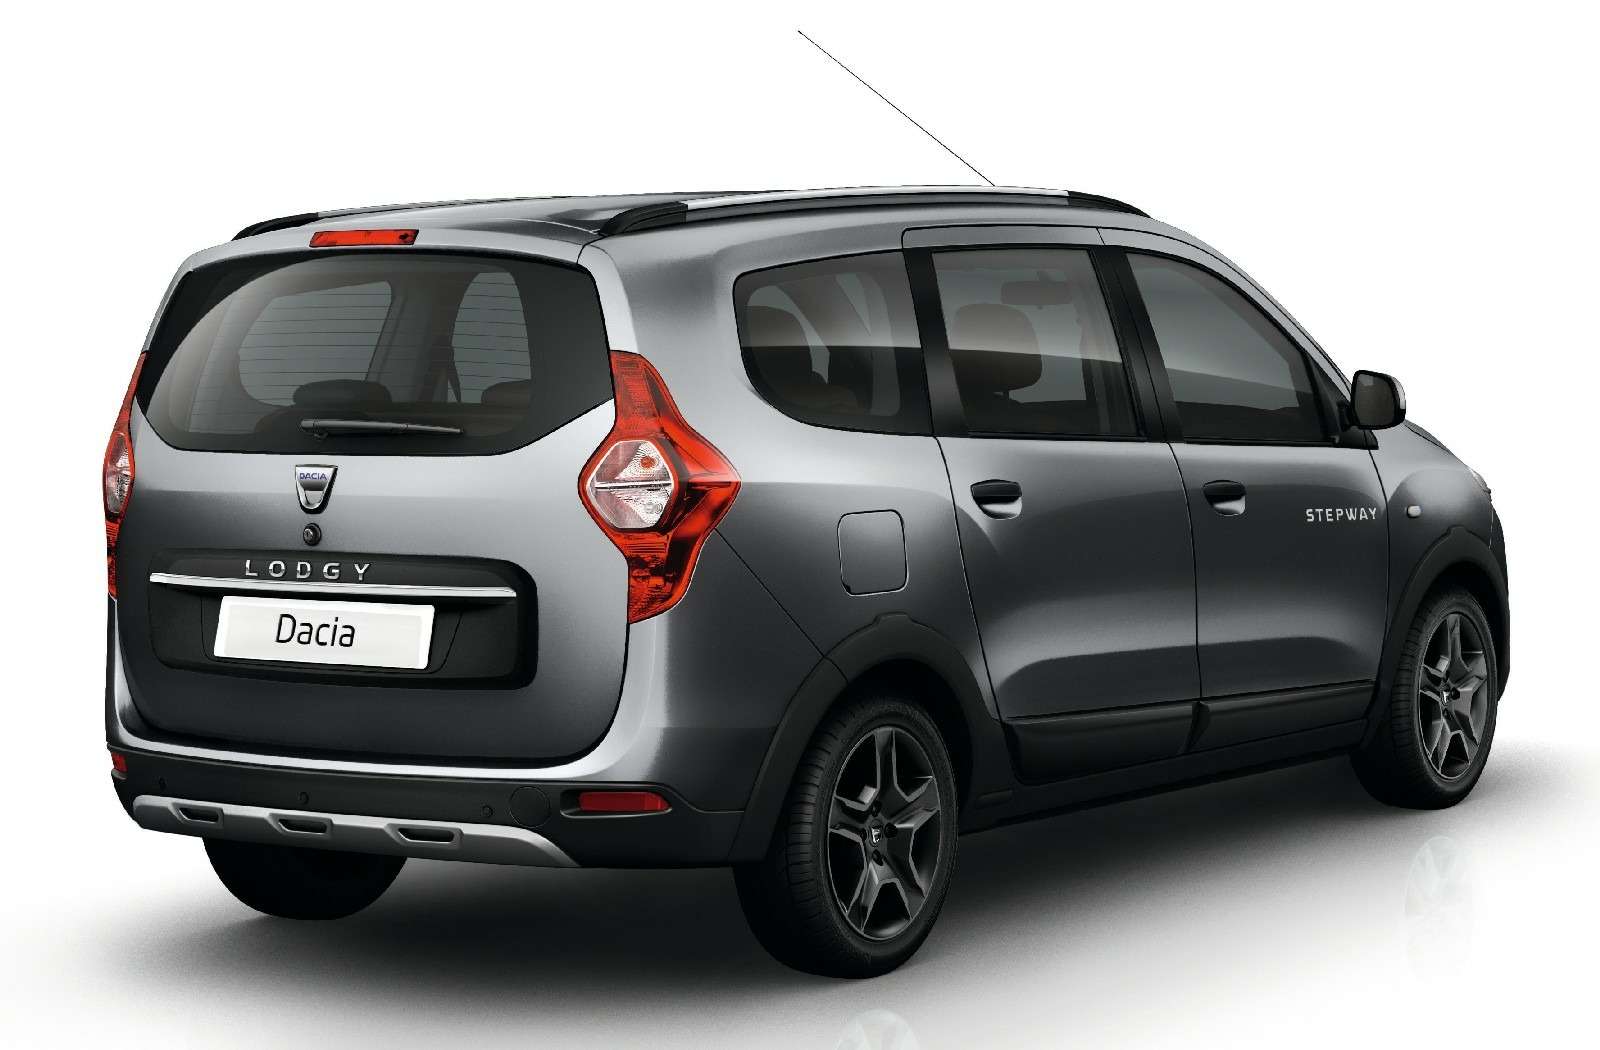 Dacia Explorer: не путать с Фордом! — фото 732238